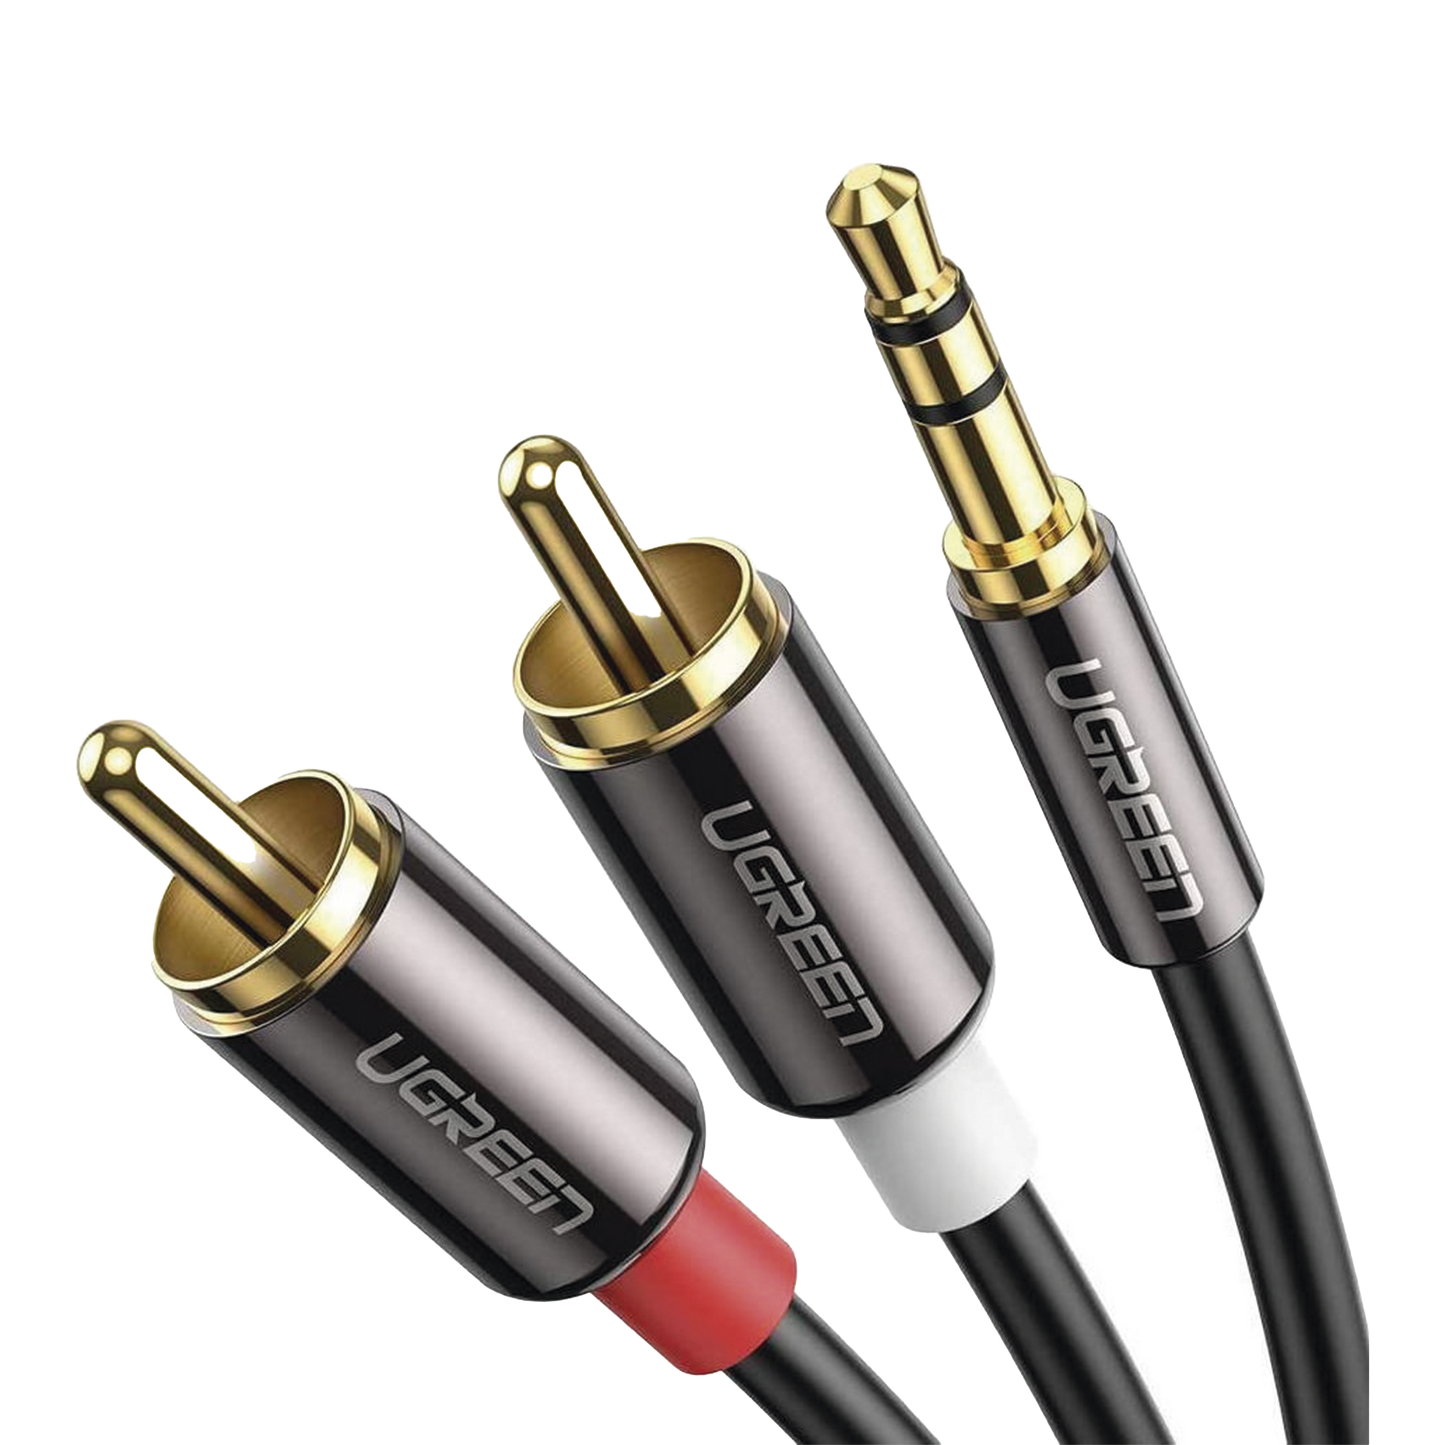 Cable Audio Premium Jack 3.5mm a 2 RCA / 10 Metros / Flexible / Doble Blindaje / Transferencia de Audio sin Pérdidas / Caja de Aleación de Cobre / Amplia Compatibilidad / Diseño Duradero.